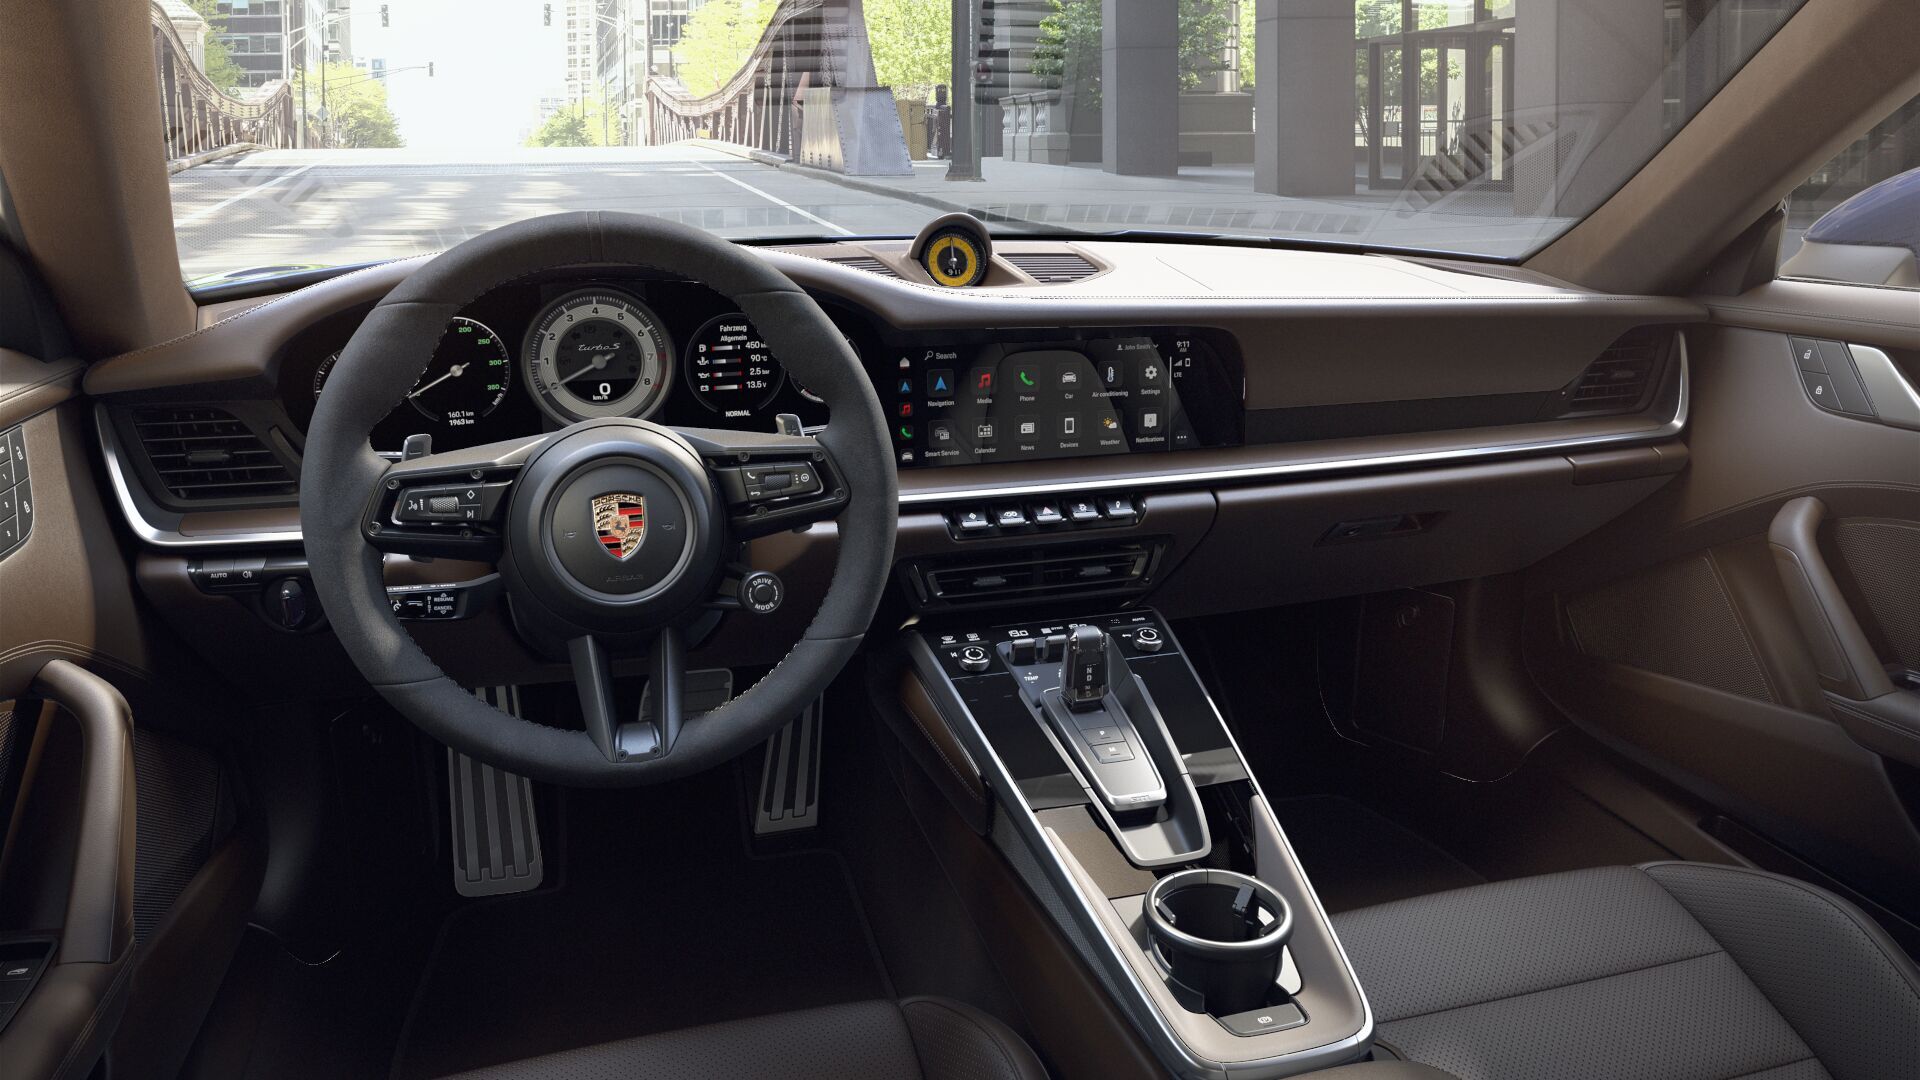 Cockpit view of Truffle Brown Porsche 911 interior